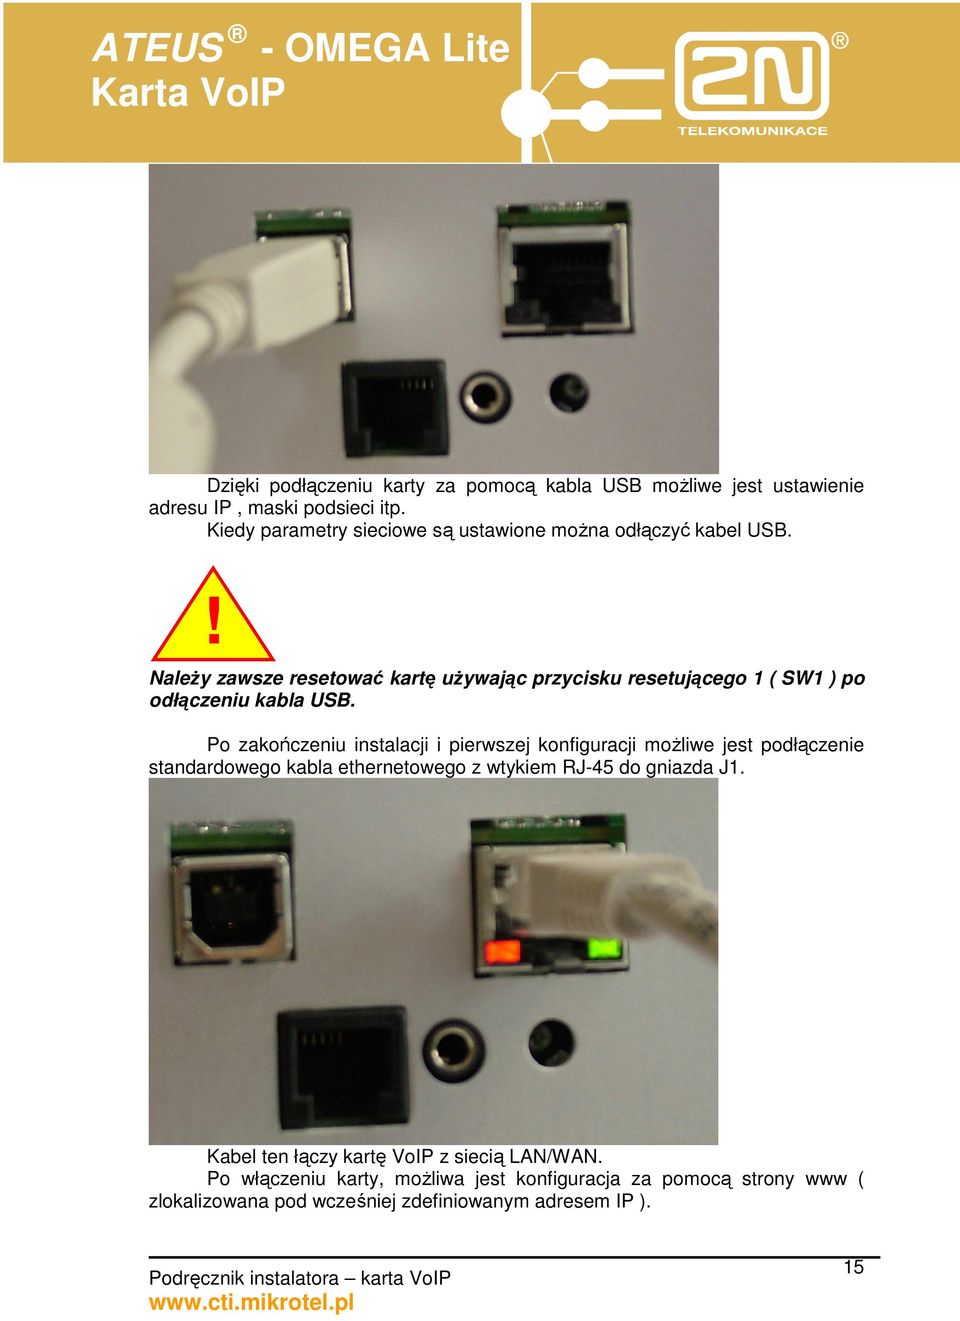 ! NaleŜy zawsze resetować kartę uŝywając przycisku resetującego 1 ( SW1 ) po odłączeniu kabla USB.